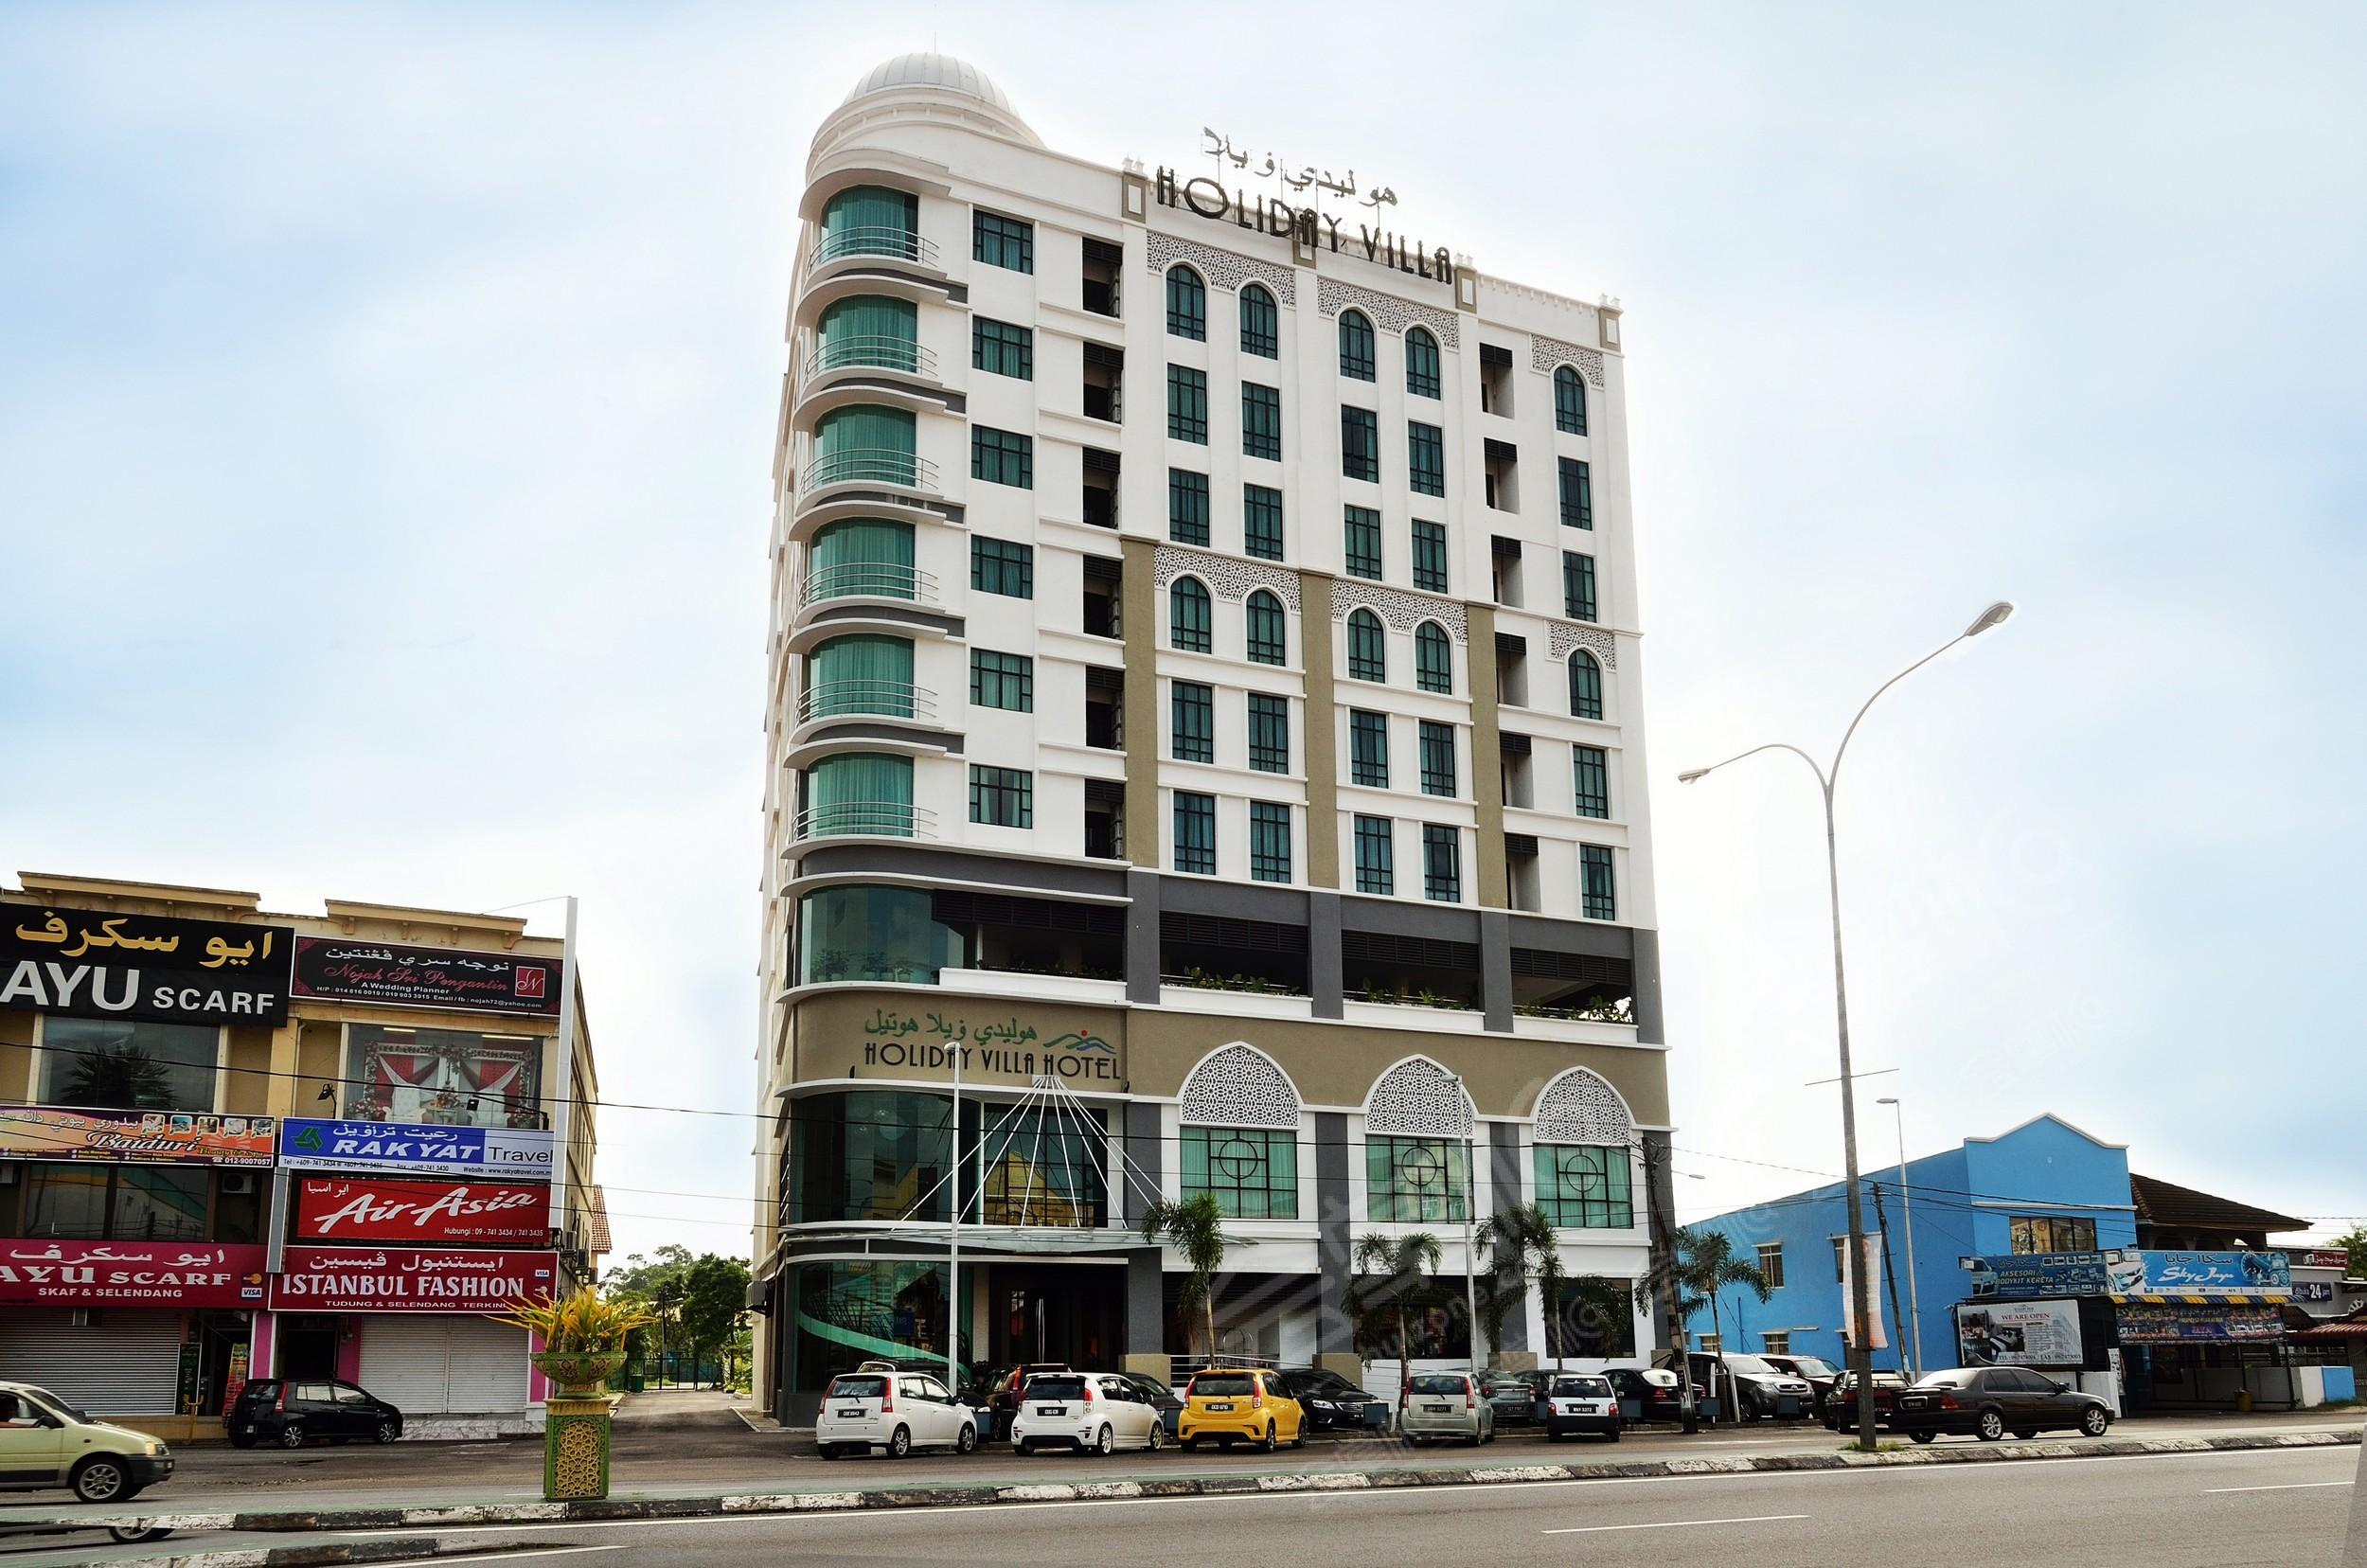 哥打巴鲁四星级酒店最大容纳200人的会议场地|哥打巴鲁假日别墅套房酒店(Holiday Villa Hotel & Suites Kota Bharu)的价格与联系方式